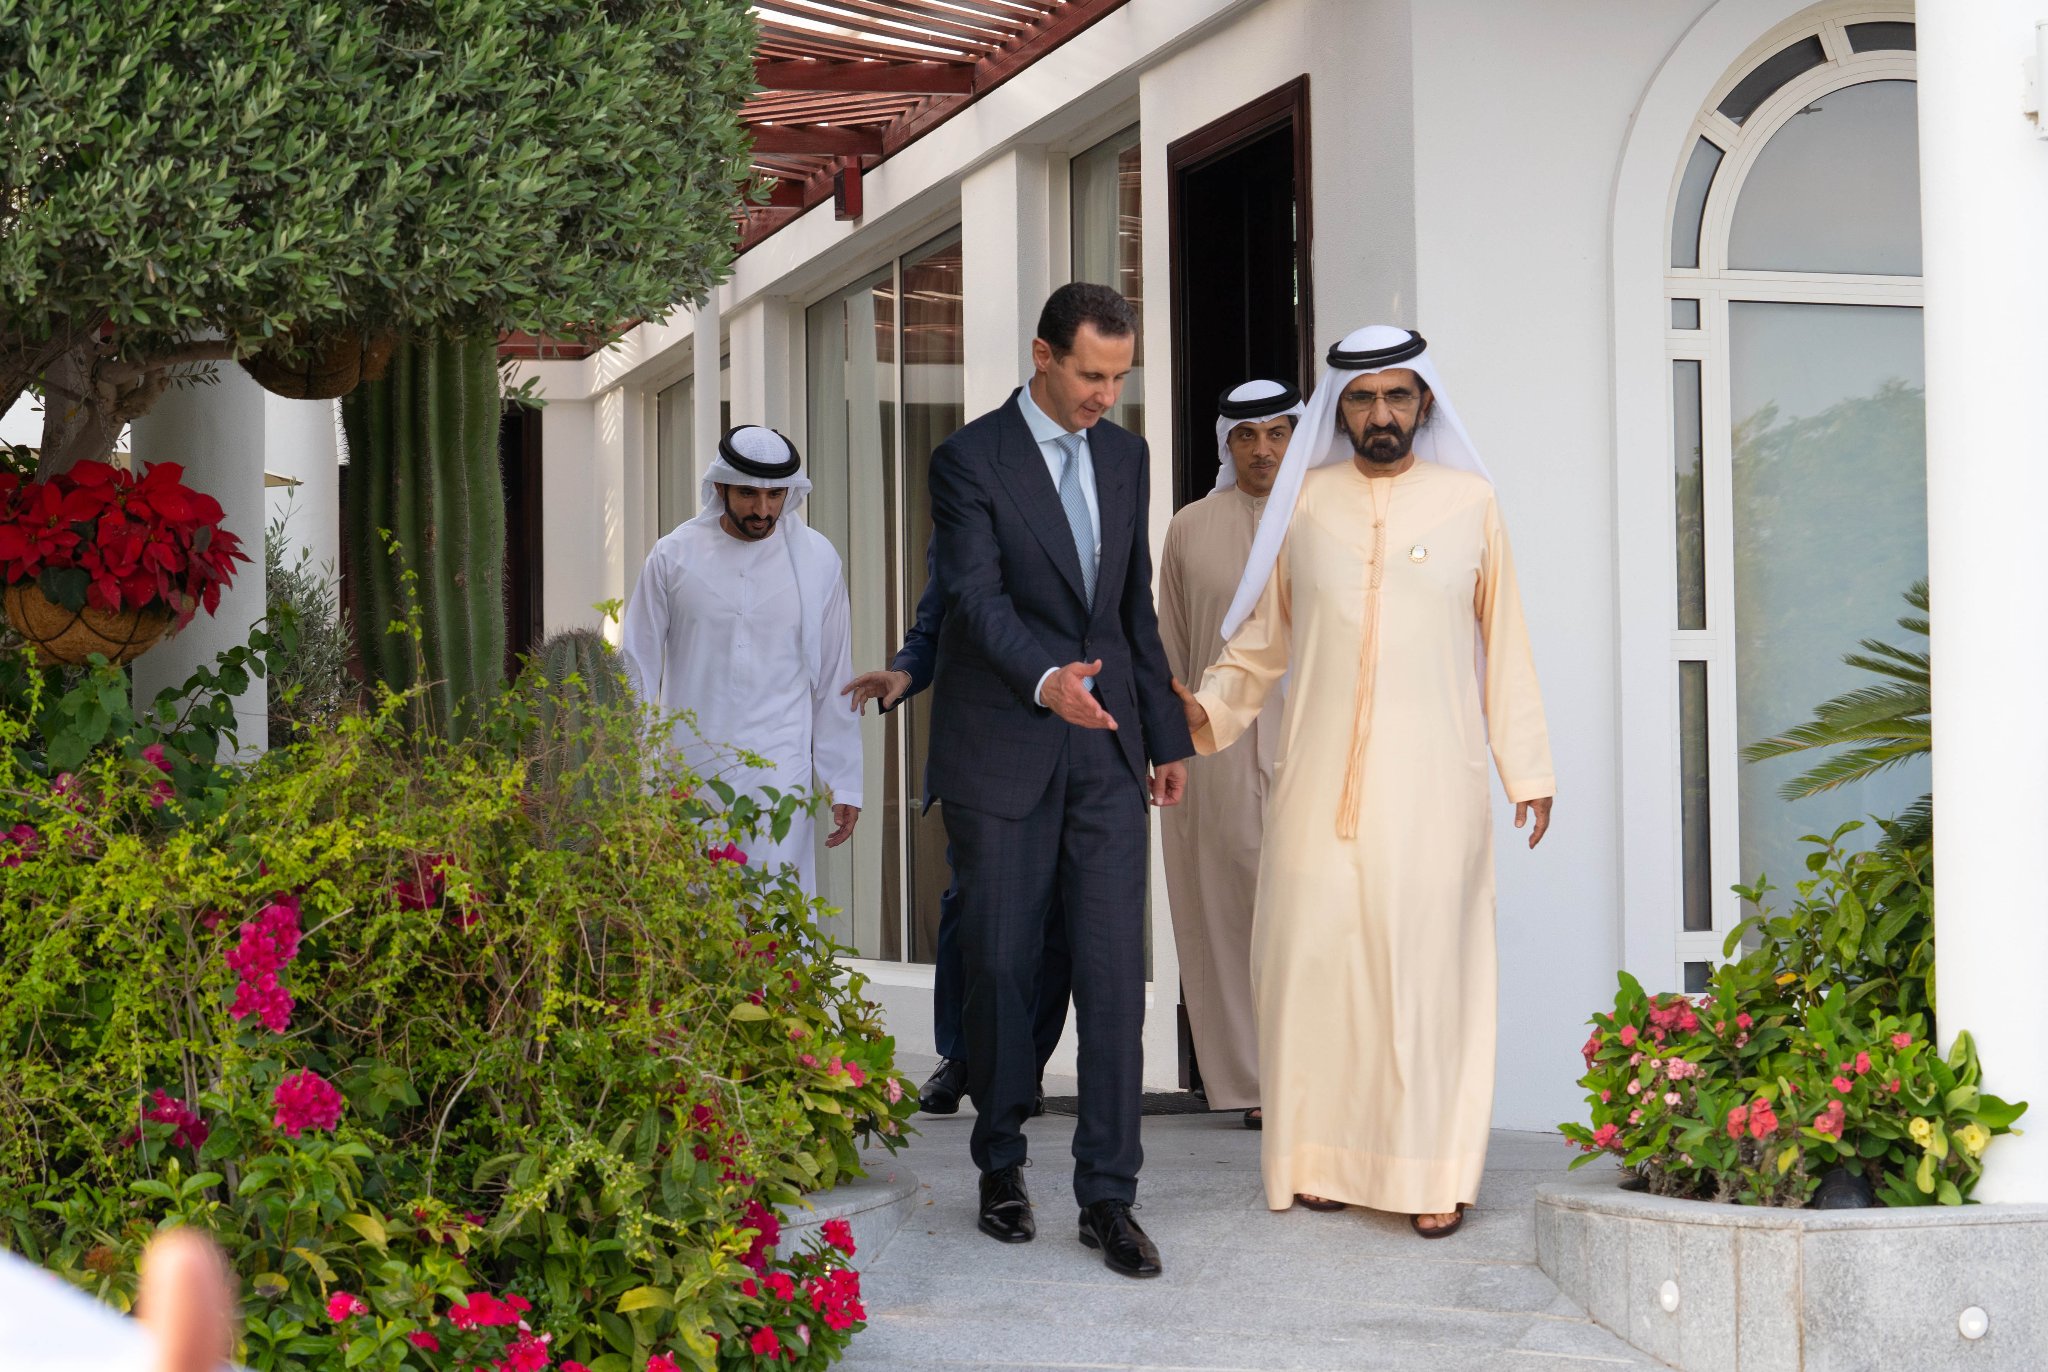 الرئيس الأسد يزور دولة الإمارات العربية المتحدة ويلتقي الشيخ محمد بن راشد آل مكتوم رئيس مجلس الوزراء حاكم دبي
